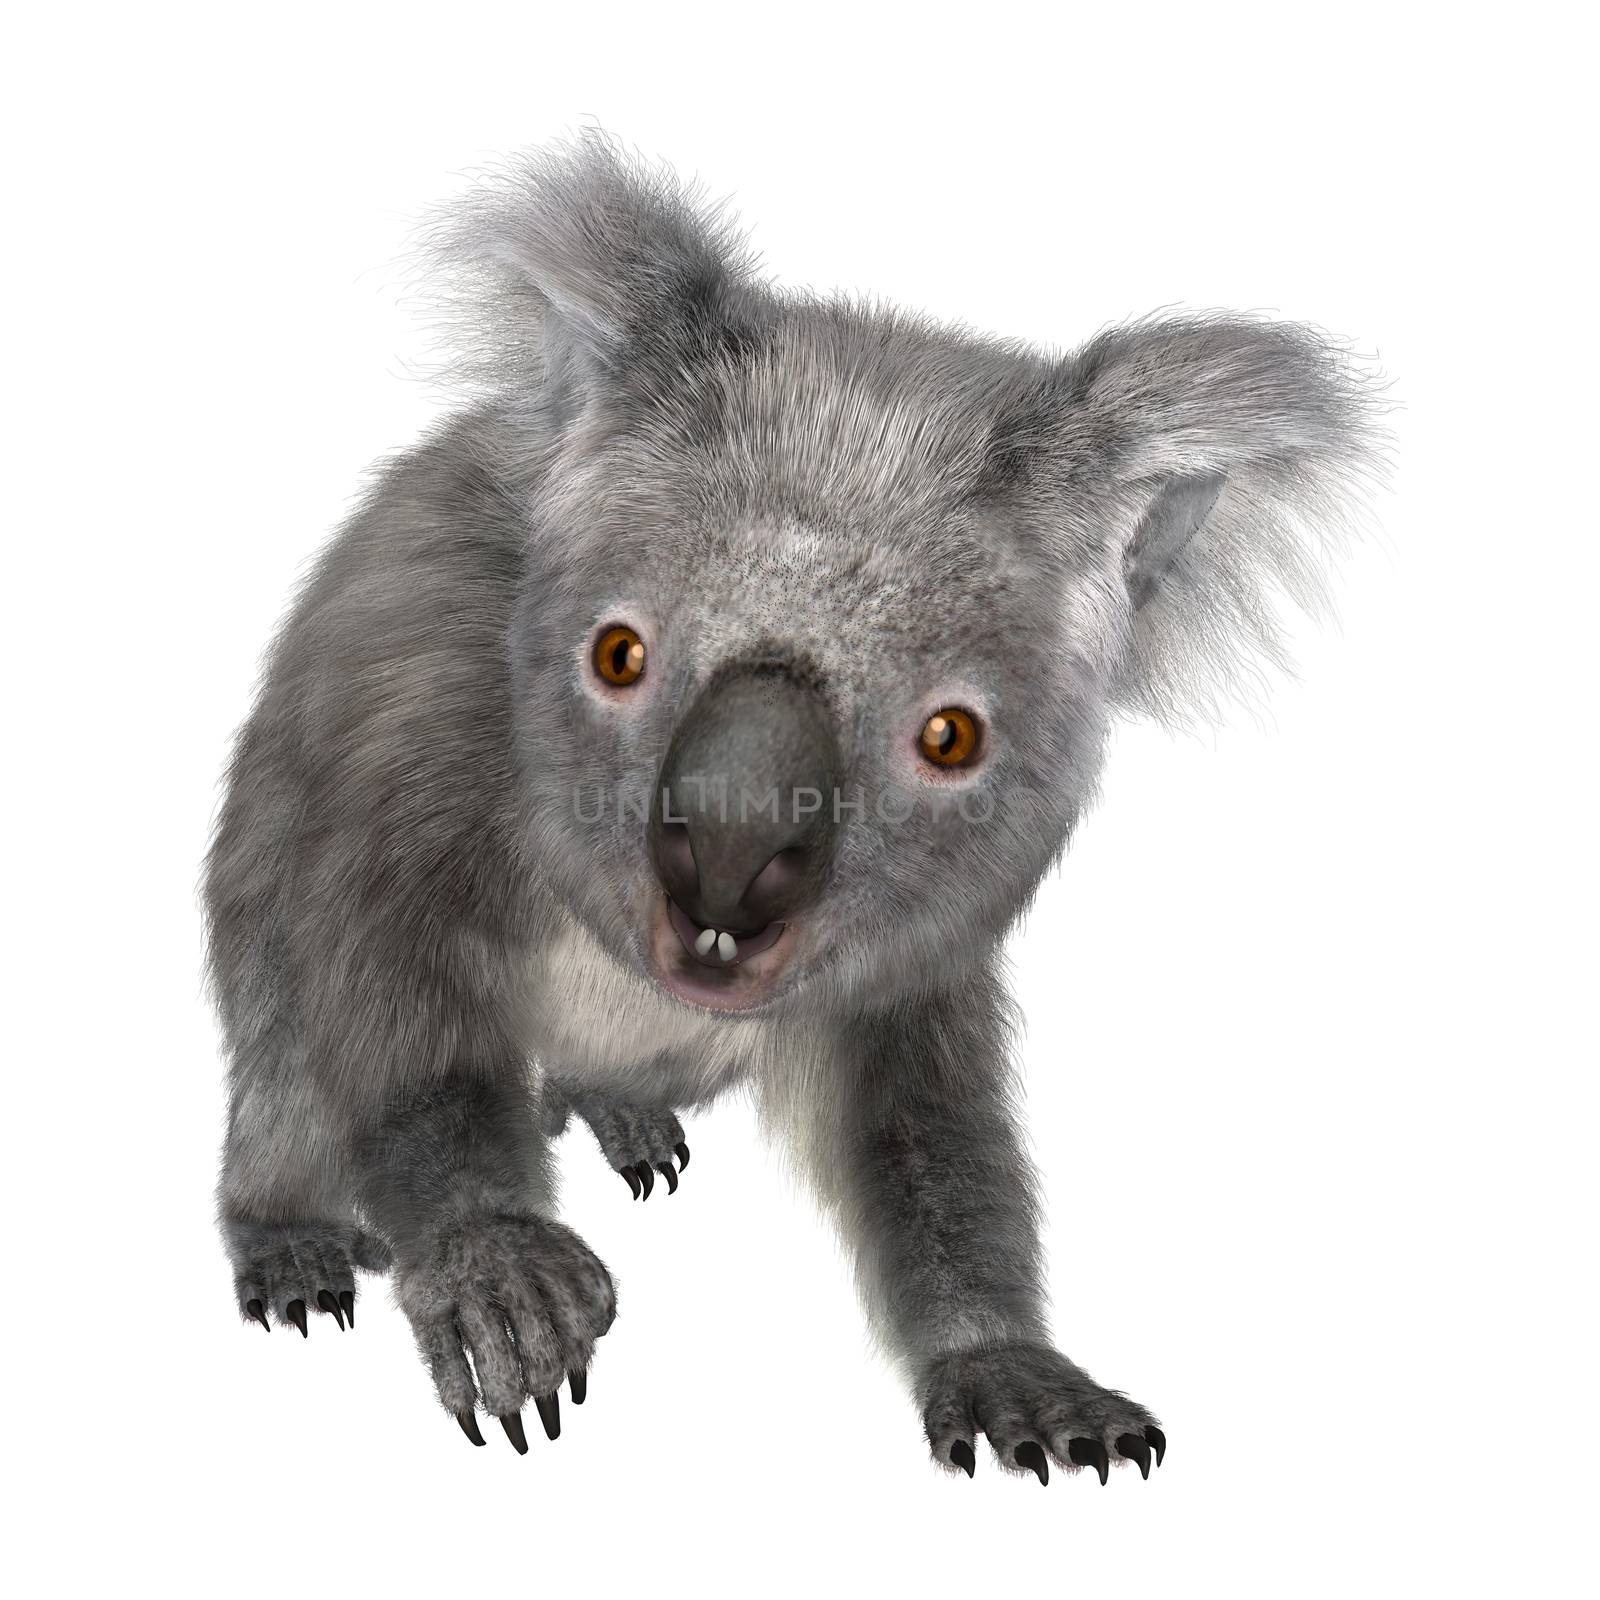 Australian Koala Bear by Vac